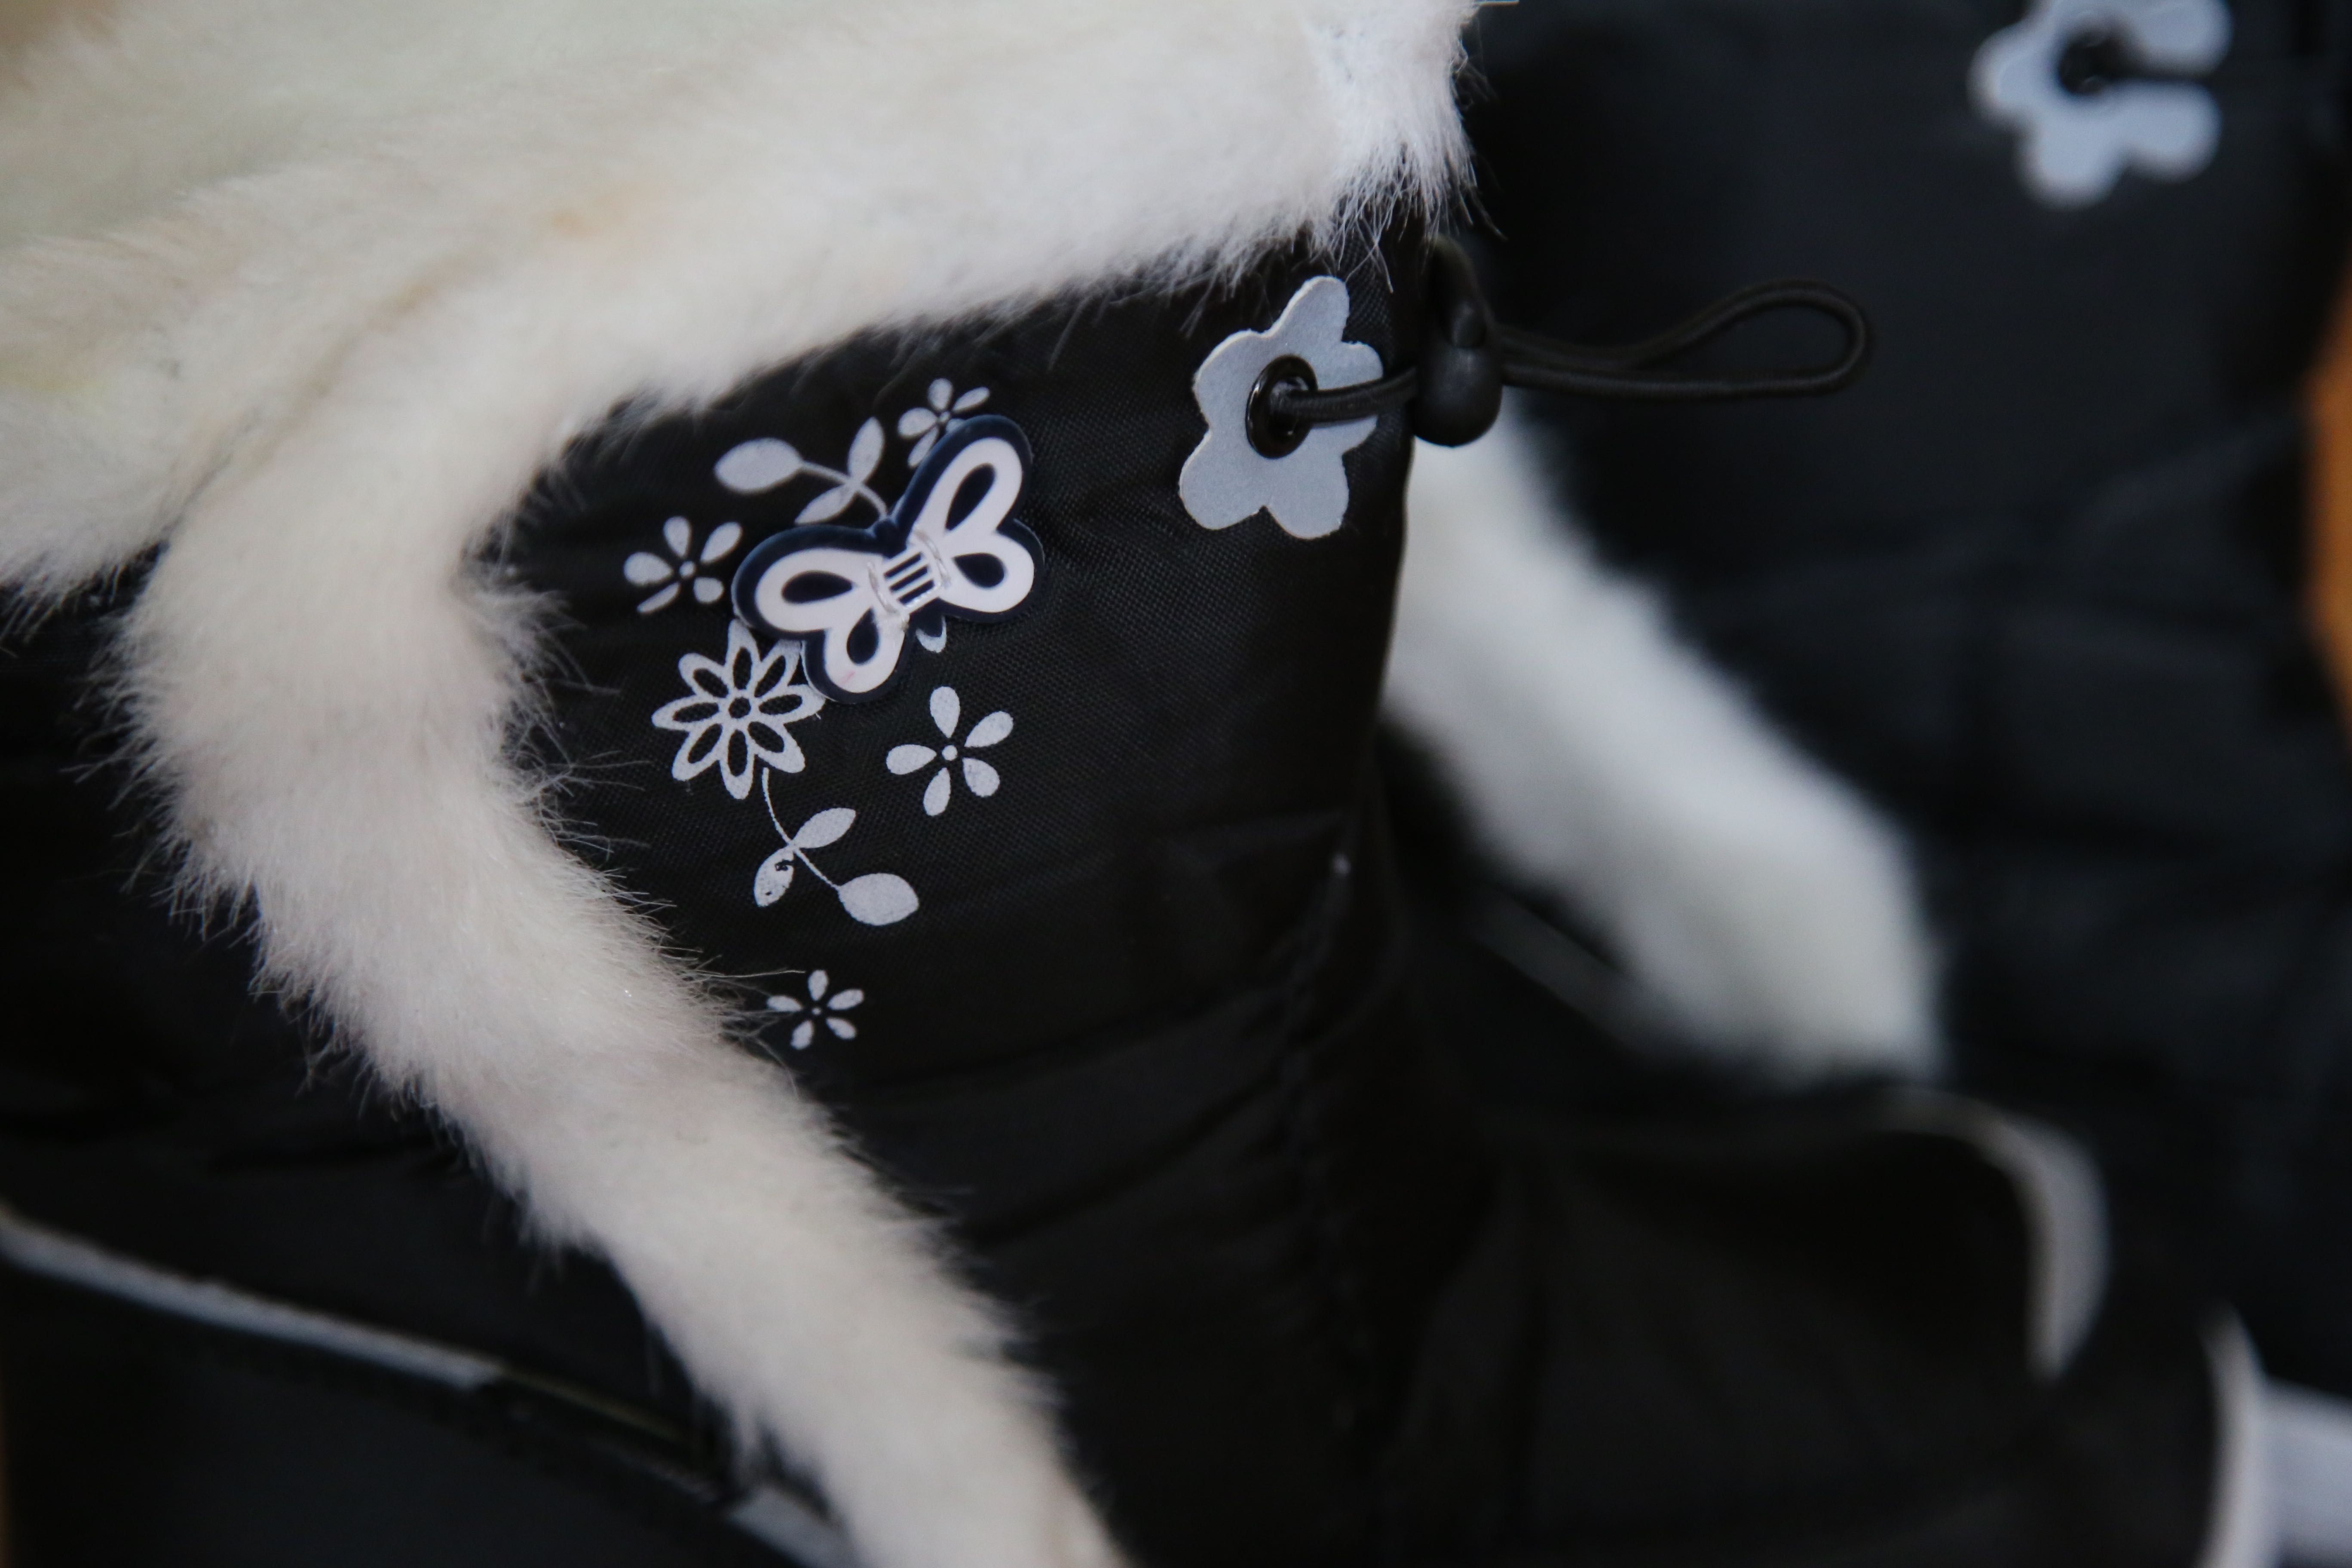 Śniegowce dziecięce buty zimowe ocieplane na rzepy r 28-35